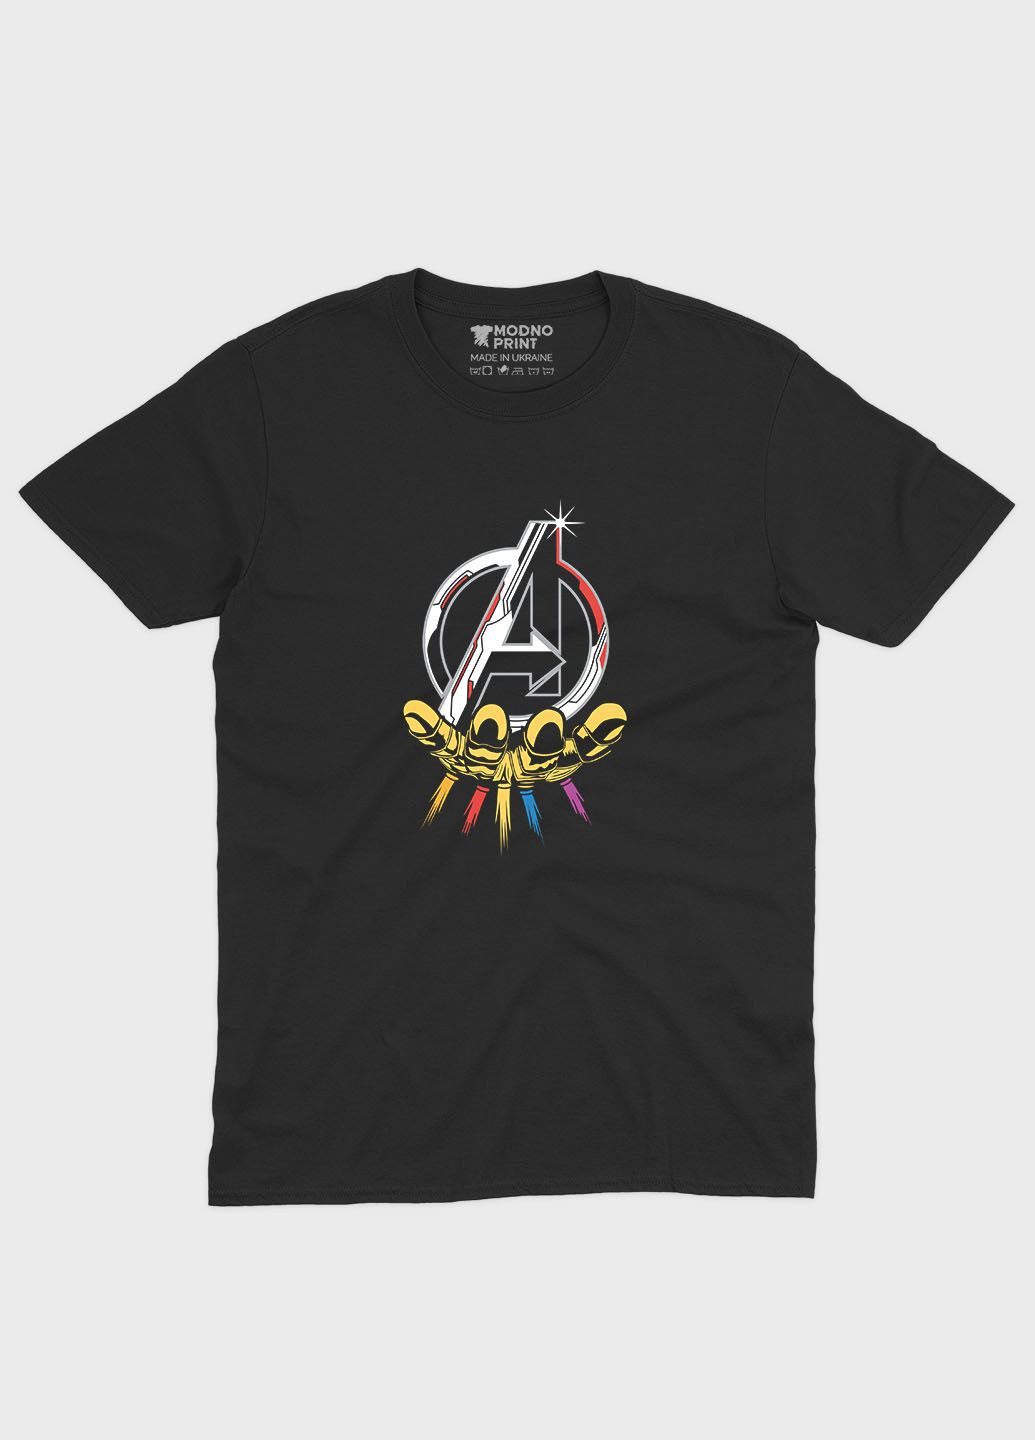 Черная демисезонная футболка для девочки с принтом супергероями - мстители (ts001-1-gl-006-025-010-g) Modno